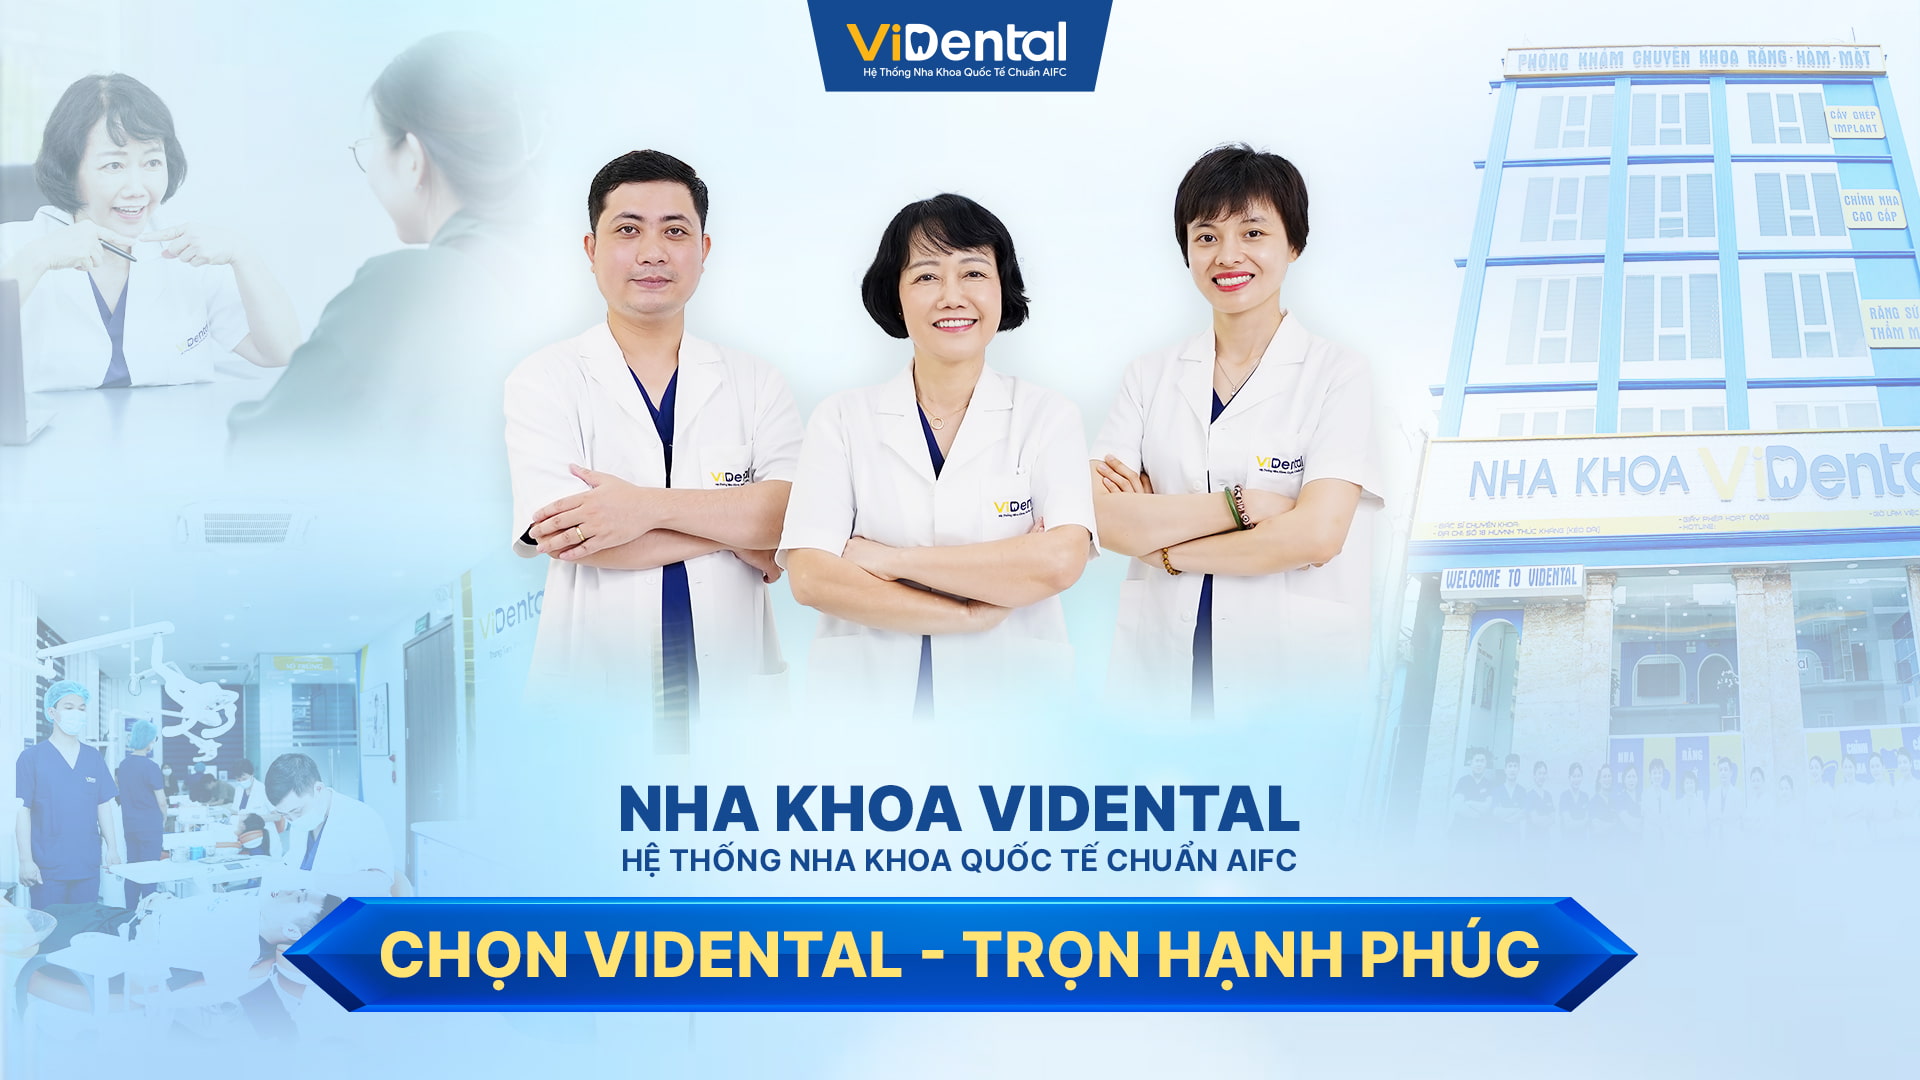 Viện niềng răng giá rẻ thẩm mỹ quốc tế ViDental